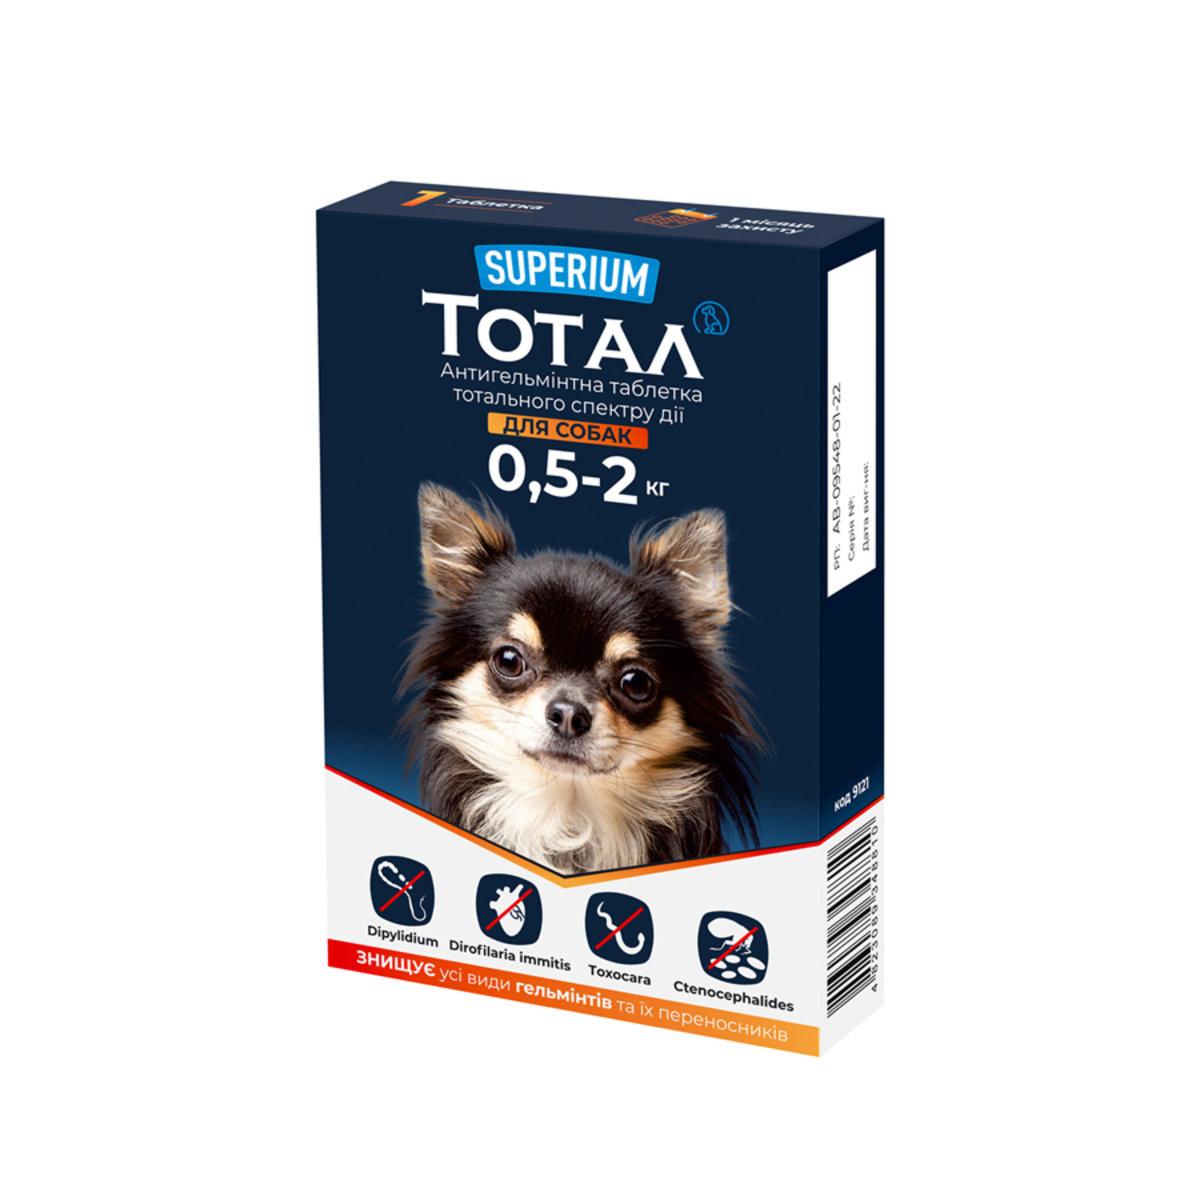 Тотал Суперіум антигельмінтик тотального спектру дії для собак вагою 0,5-2 кг, 1 таблетка